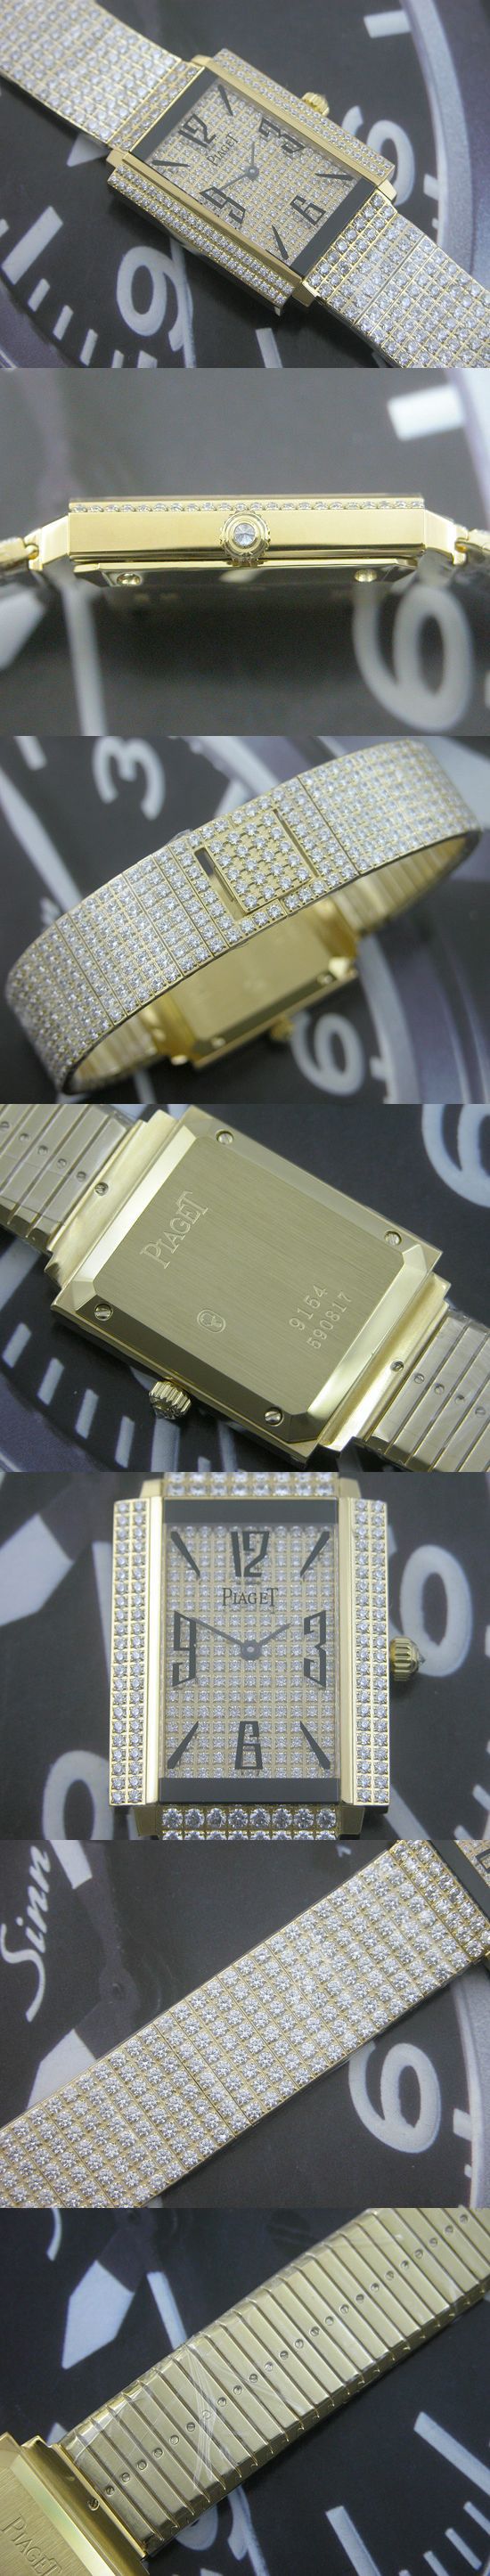 おしゃれなブランド時計がピアジェ-スイスチップ-PIAGET-PI00005S-女性用を提供します.